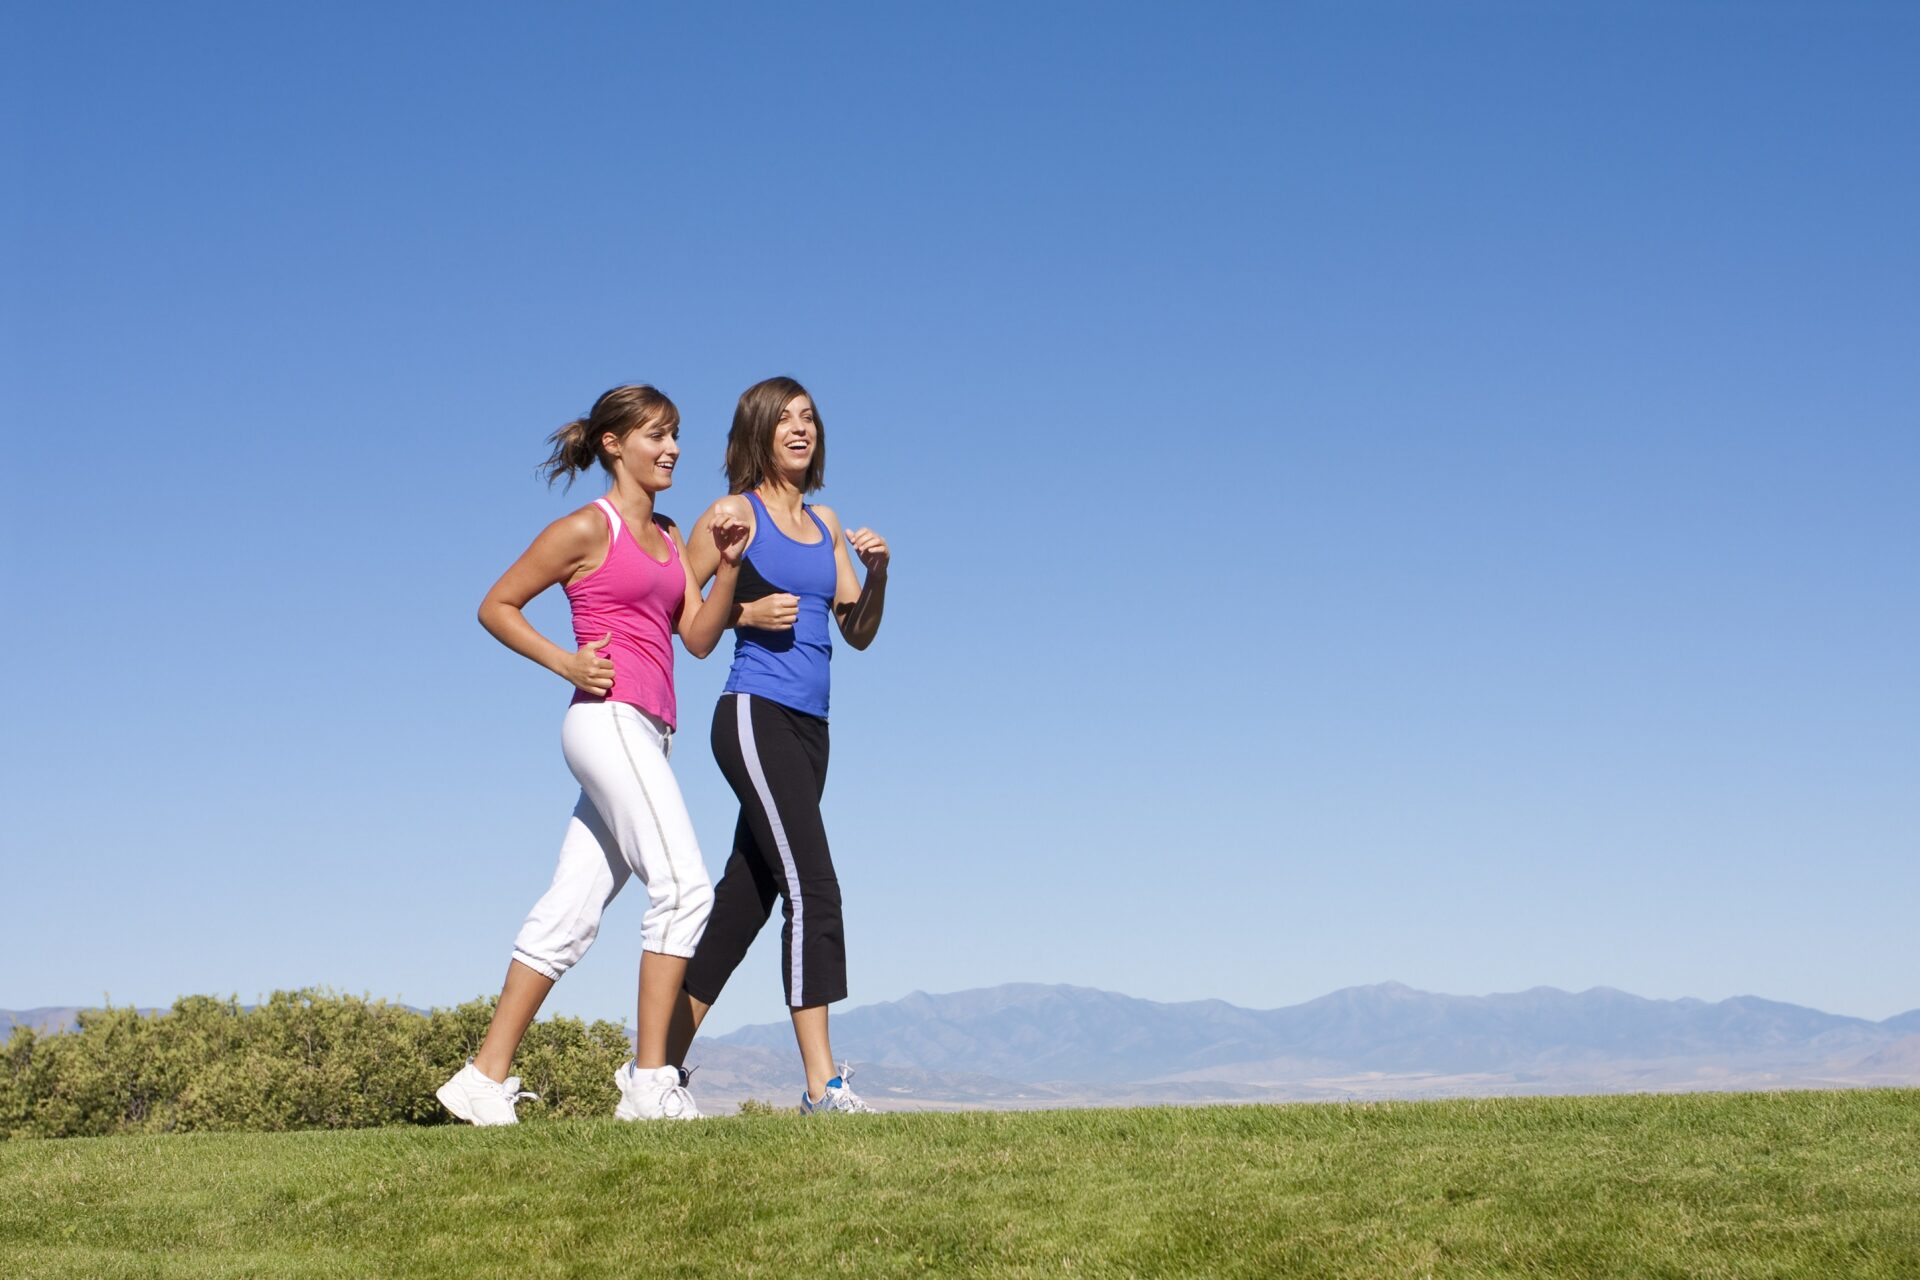 La marche active à la maison : une bonne activité pour maigrir et rester en  bonne santé